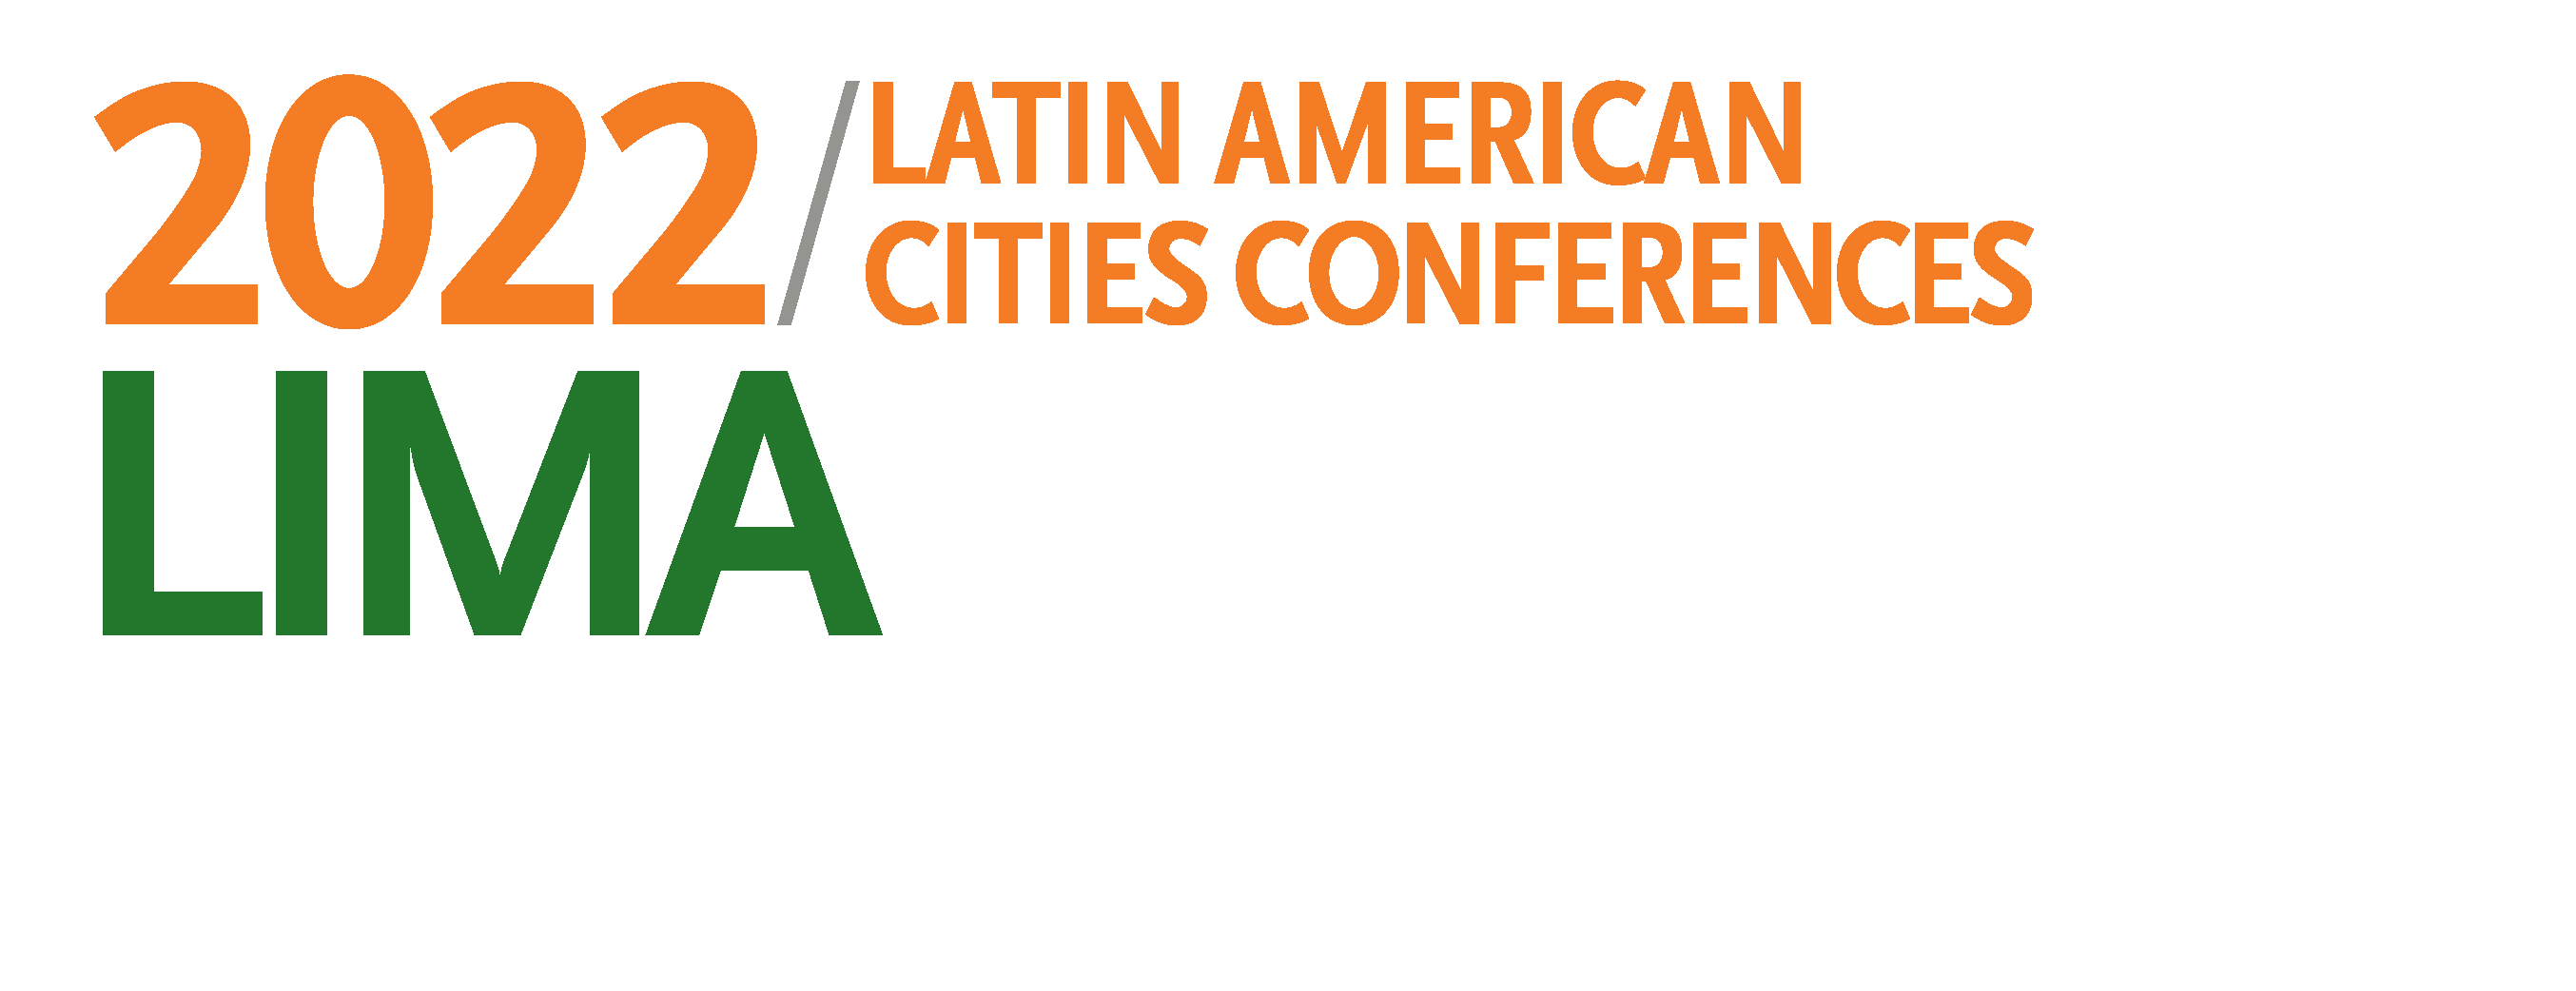 Lima LACC 2022 Logo